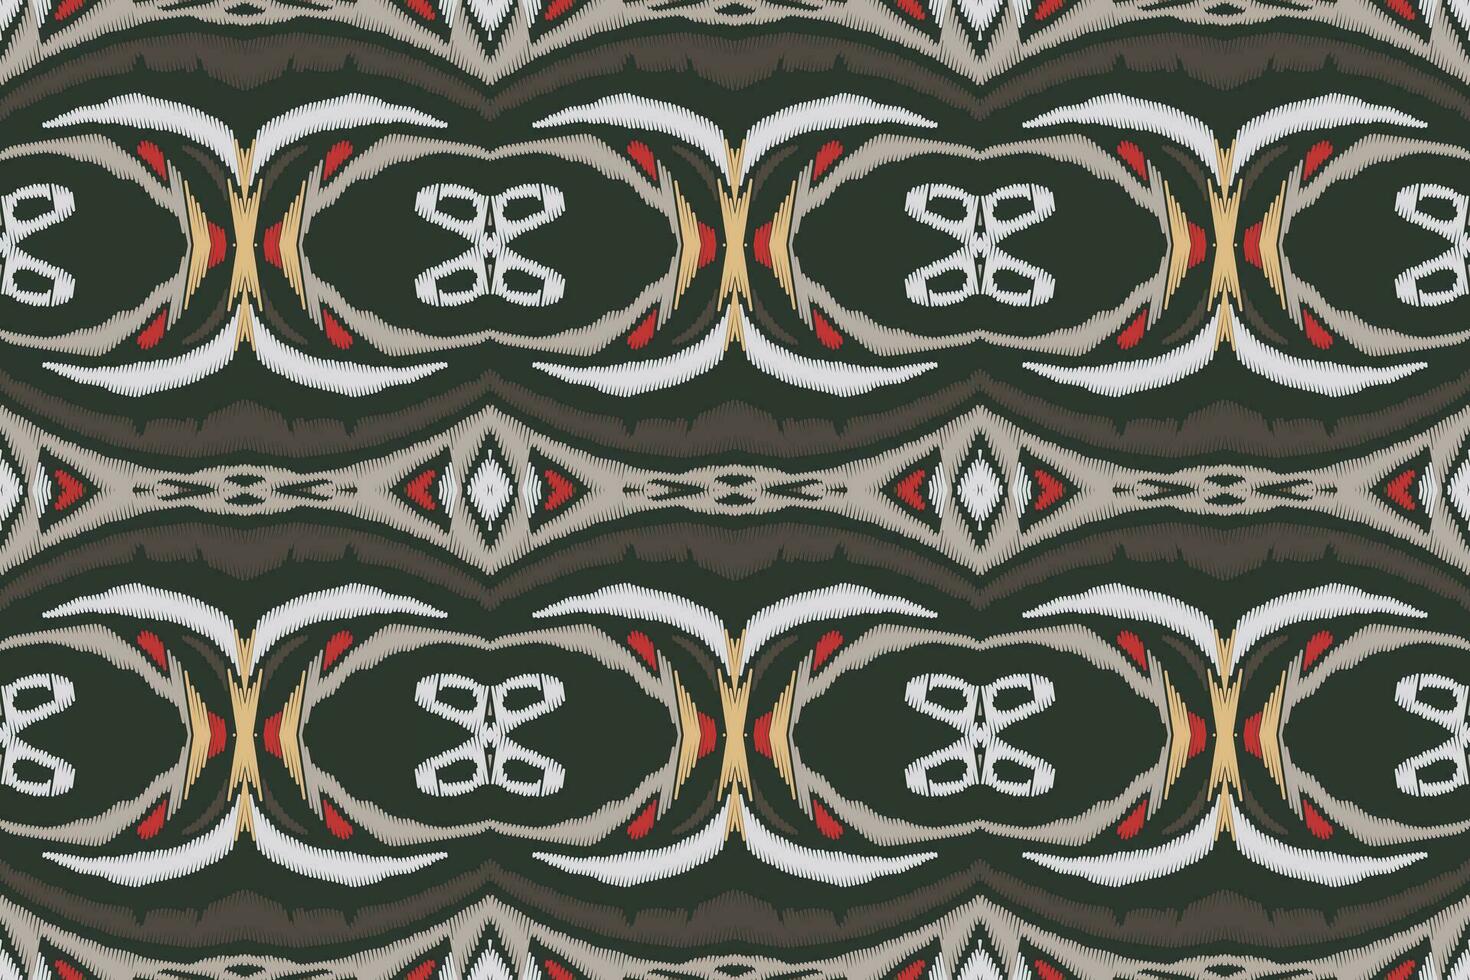 ikat damasco paisley bordado fundo. ikat floral geométrico étnico oriental padronizar tradicional.asteca estilo abstrato vetor ilustração.design para textura,tecido,vestuário,embrulho,sarongue.